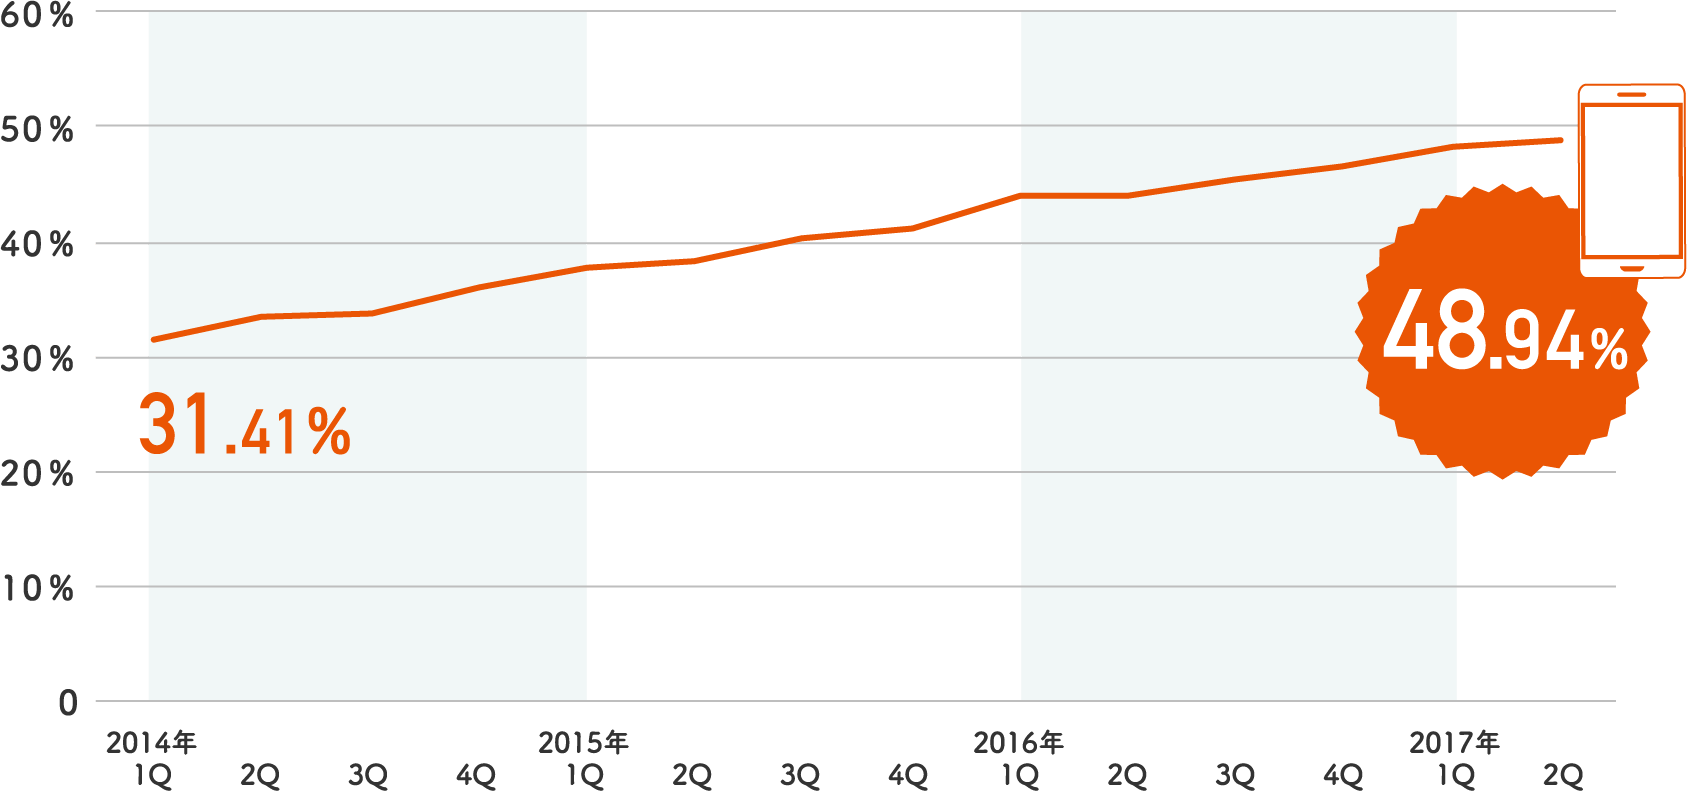 調査店舗のスマートフォン経由の受注額の割合は2014年1月が31.41％に対し2016年末で48.94％に推移